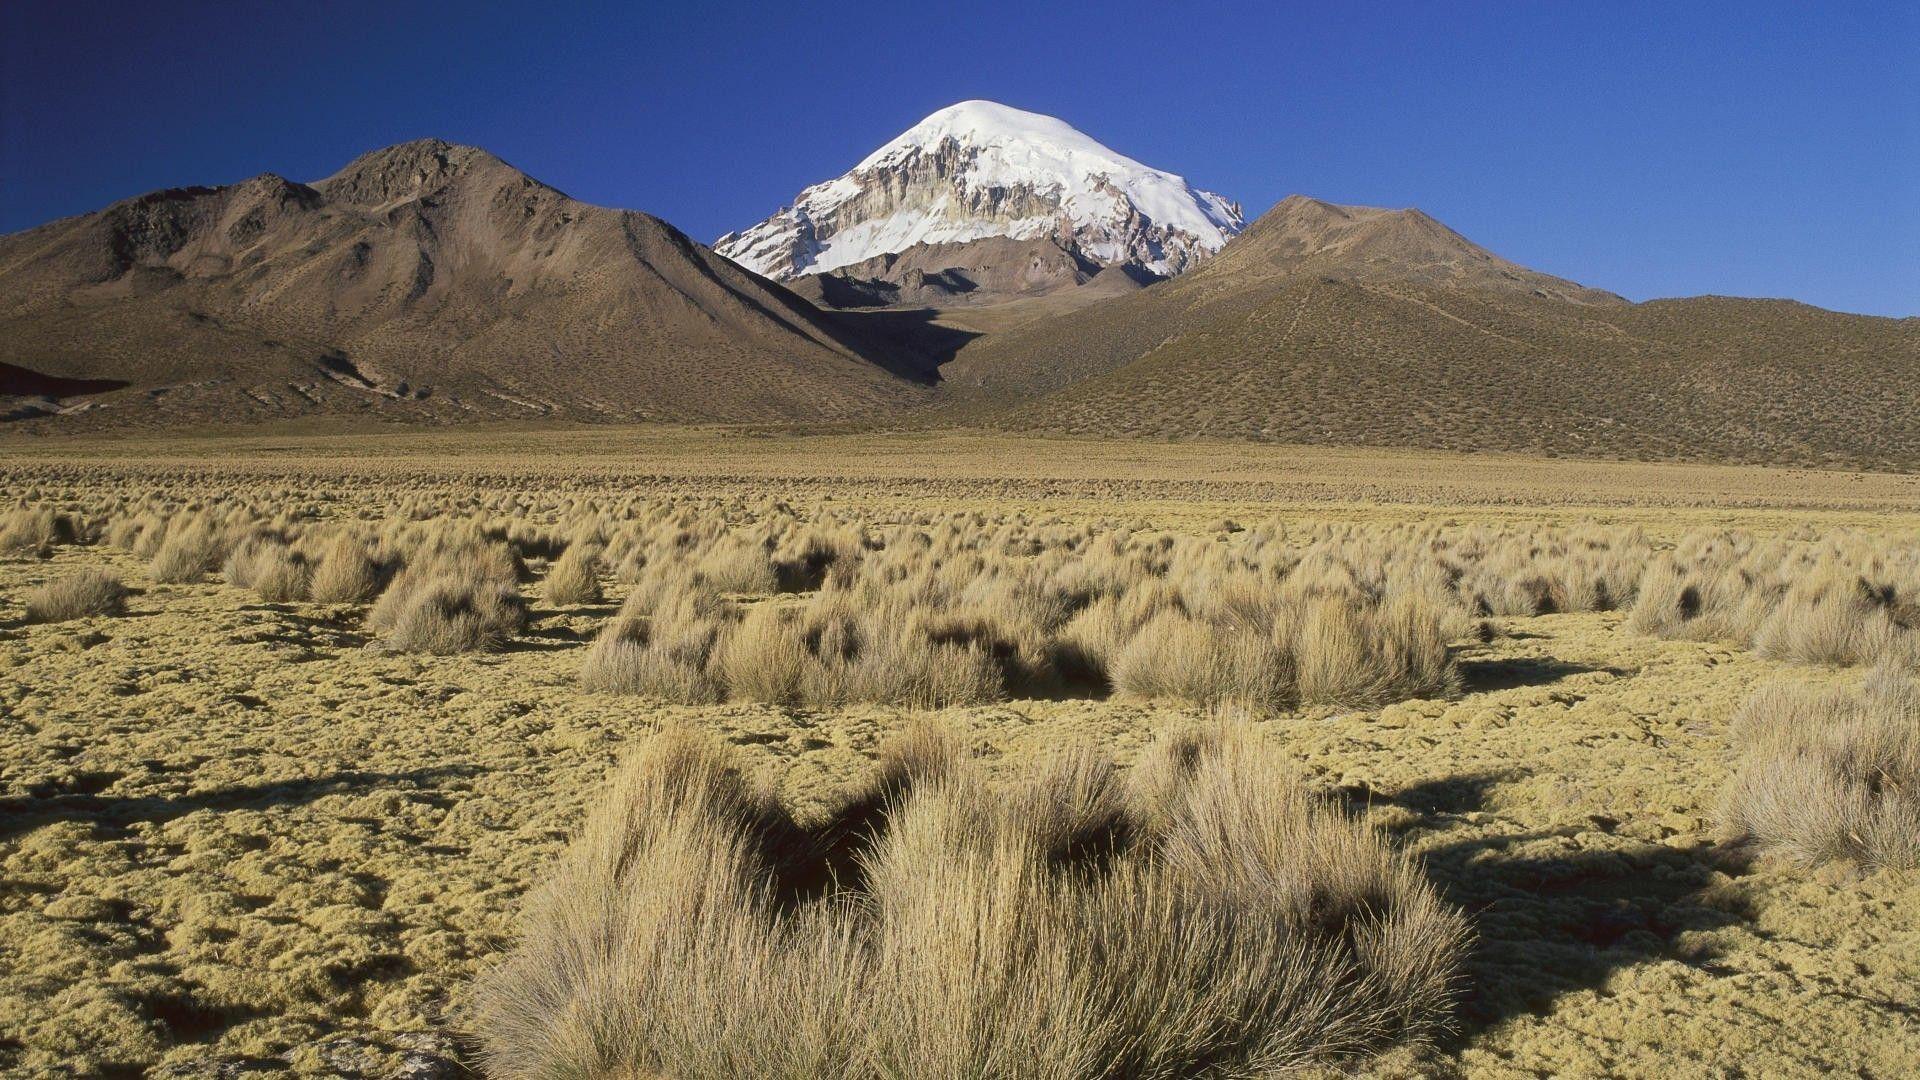 Harsh desert landscape in Bolivia wallpaper and image